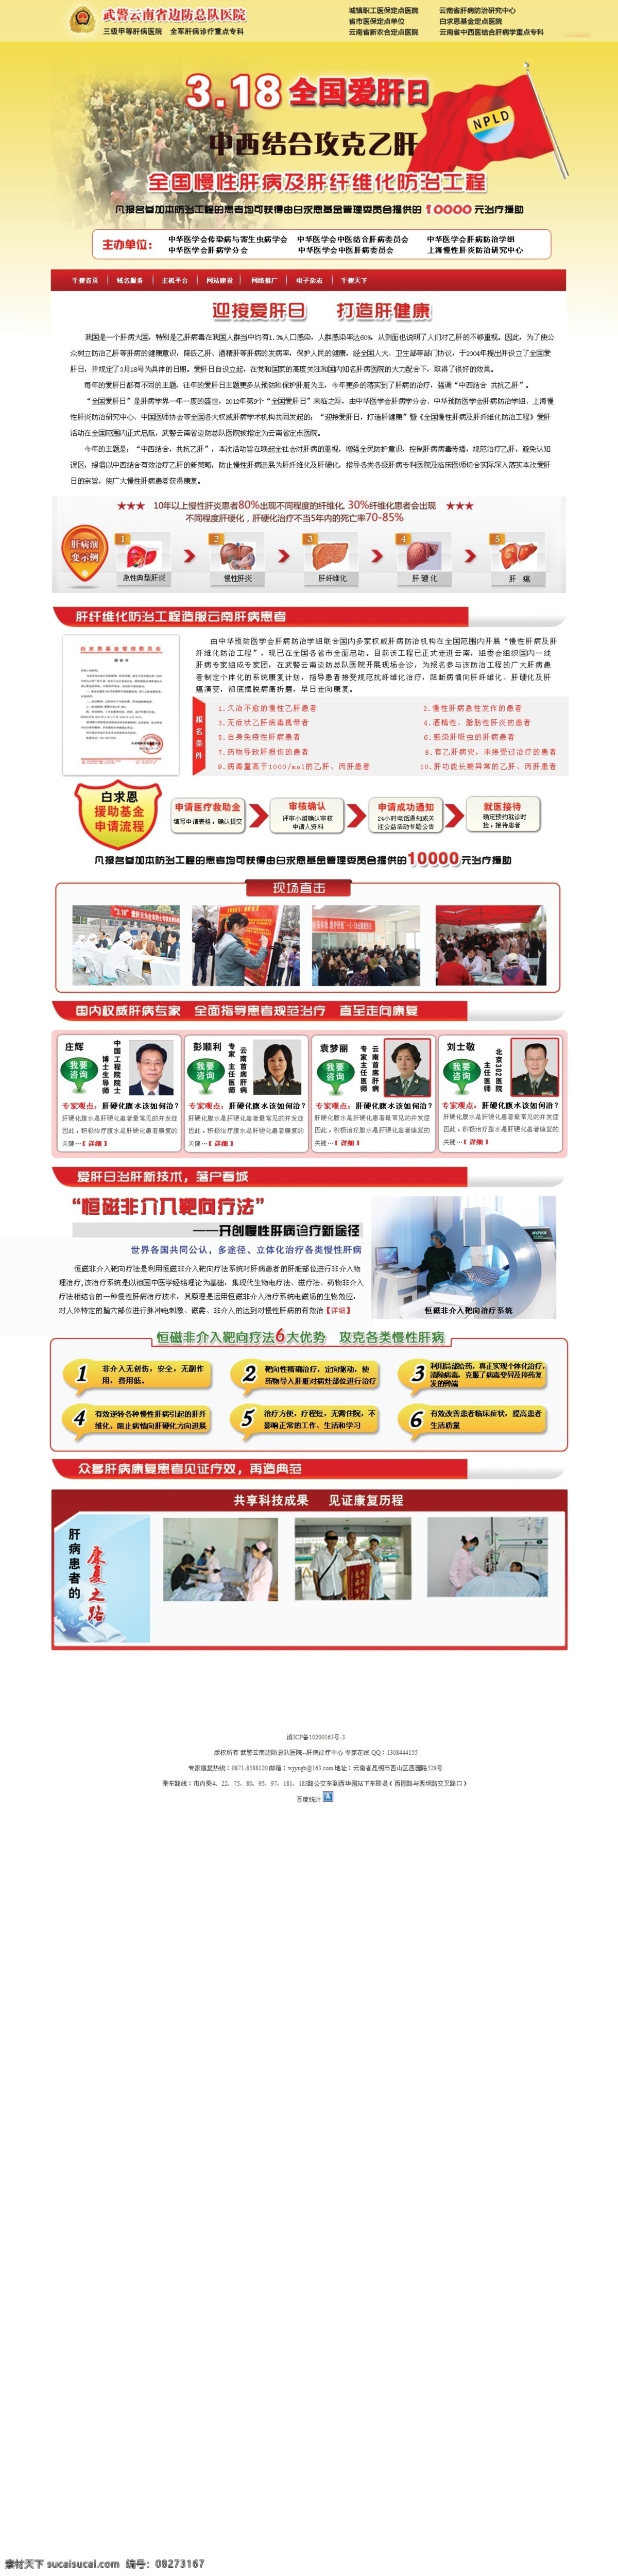 肝病 专题 网页 模版 网页模板 网页设计 源文件 中文模版 肝病广告 网页素材